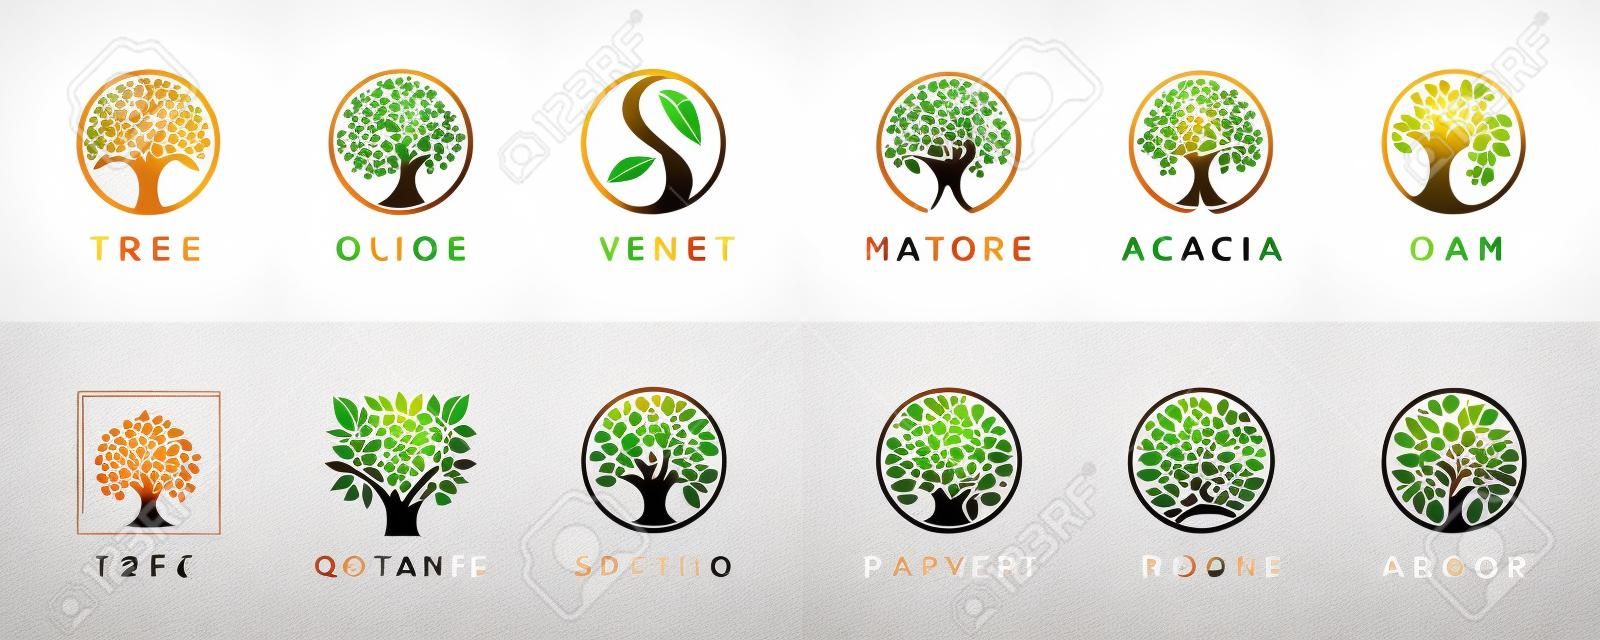 Conjunto de iconos abstractos del logotipo del árbol de la vida. símbolos botánicos de la naturaleza vegetal. rama de árbol con signos de hojas. colección de emblemas de elementos de diseño natural. ilustración vectorial